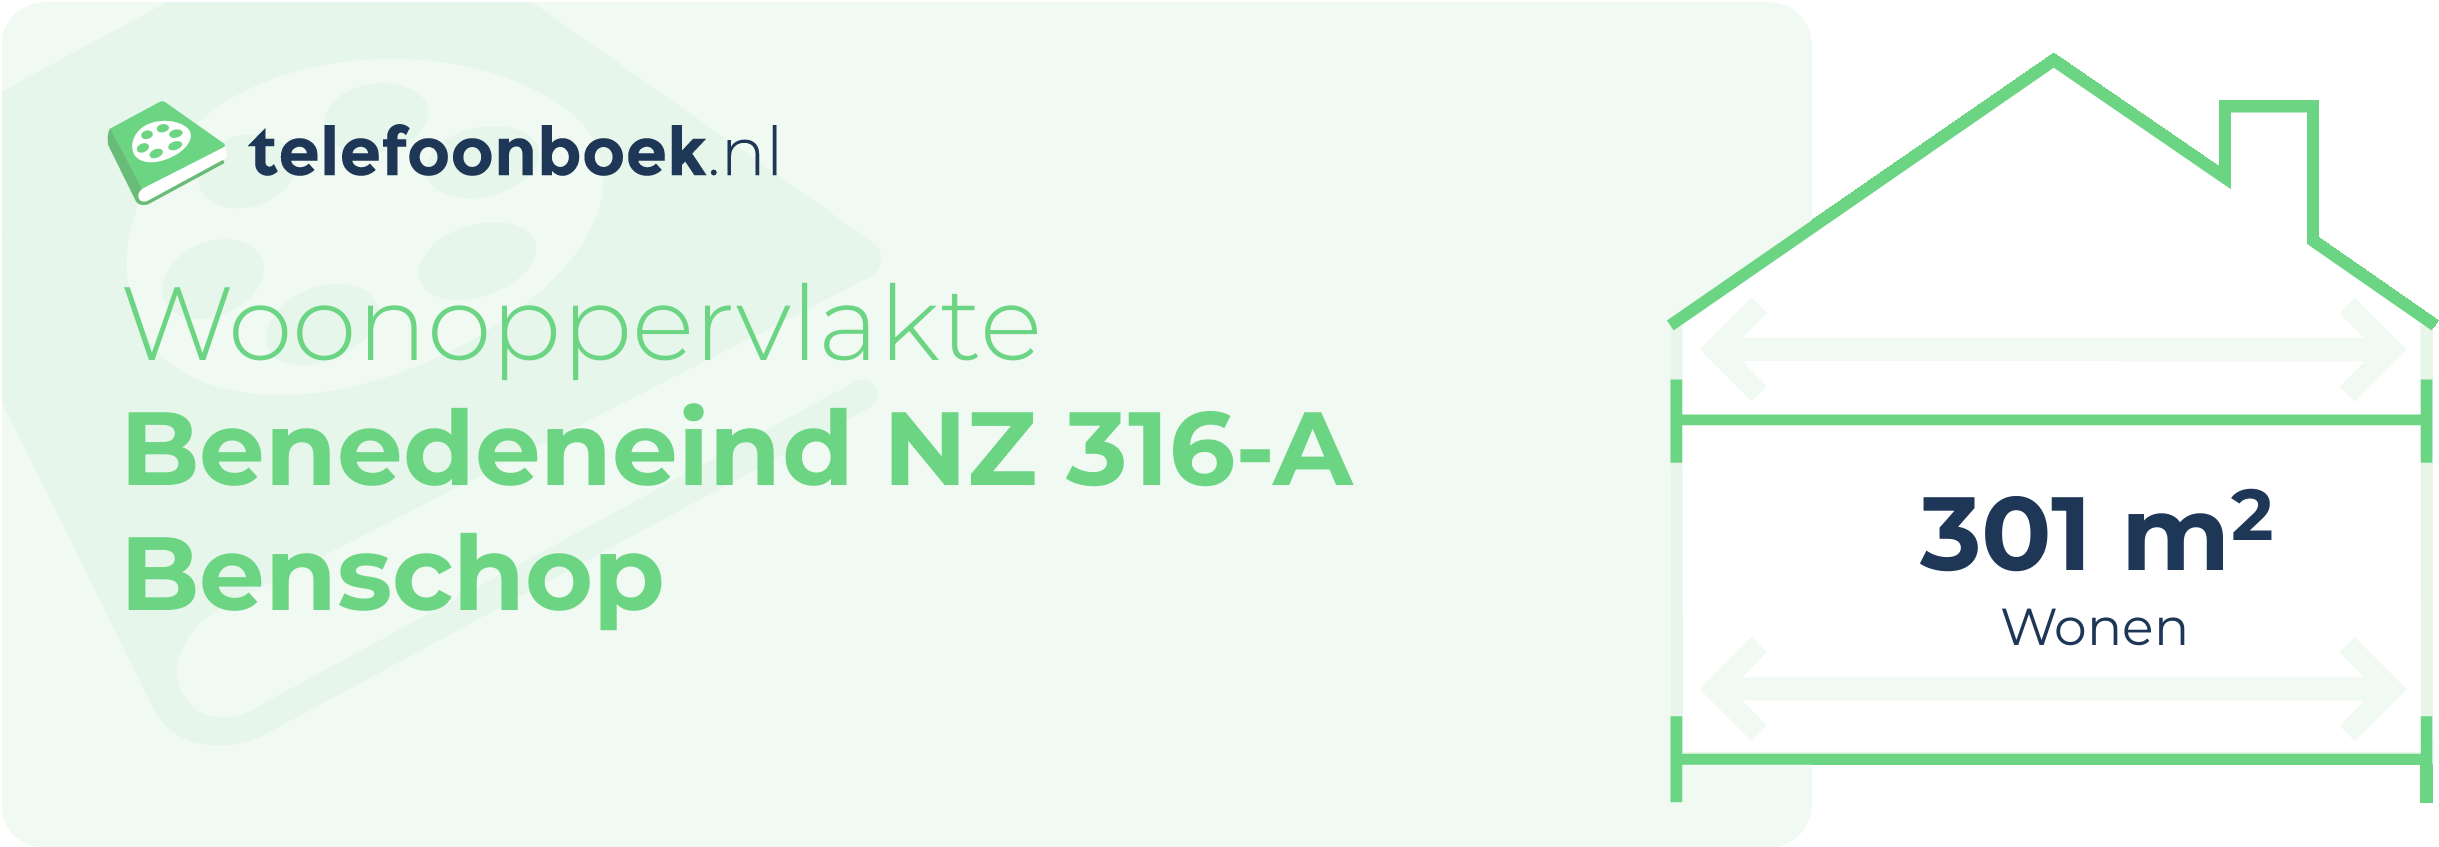 Woonoppervlakte Benedeneind NZ 316-A Benschop